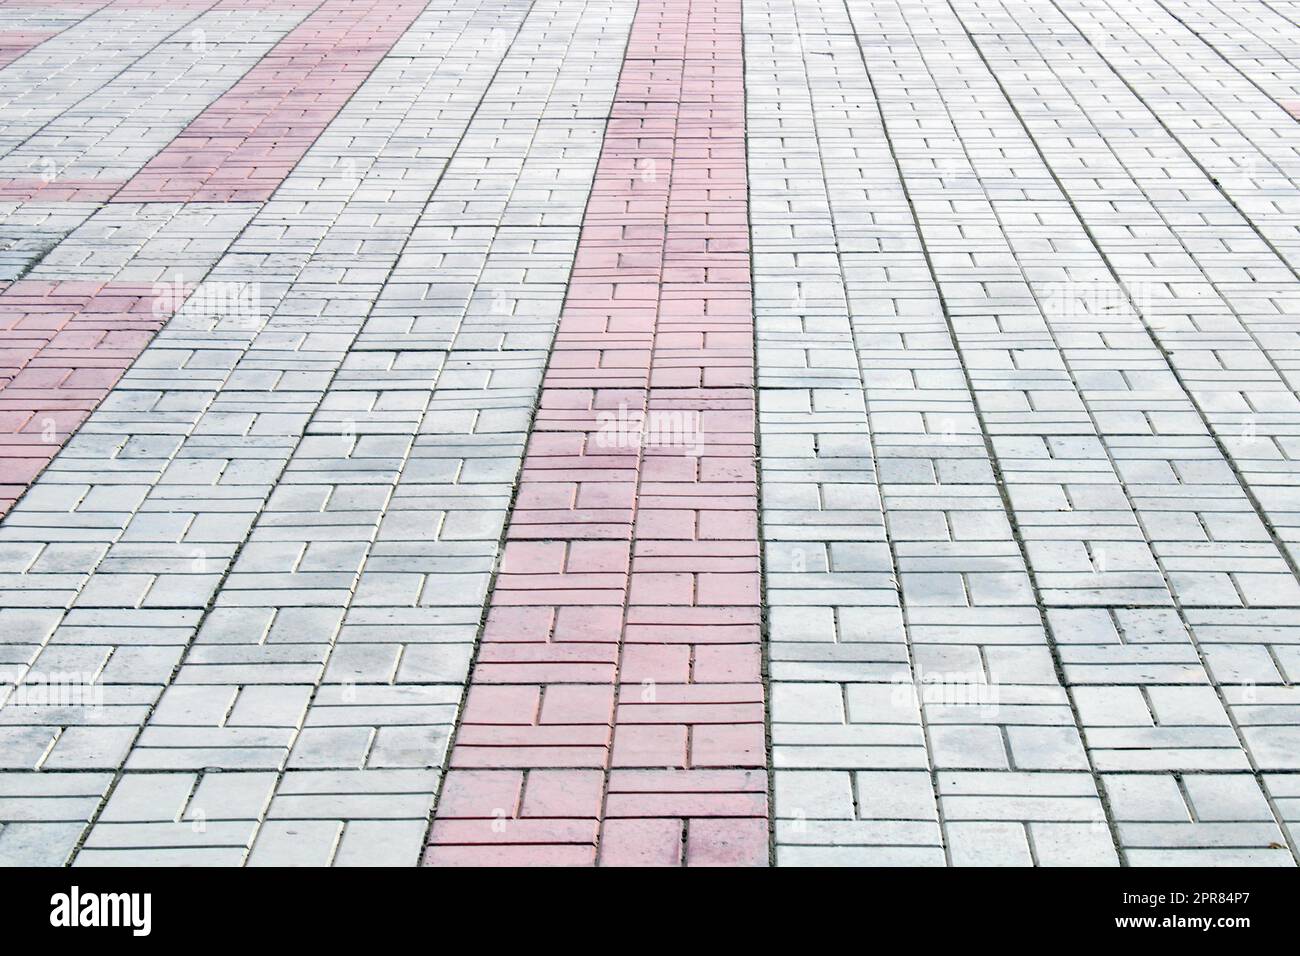 Piastrelle bianche, grigie e rosse sul marciapiede. Architettura, costruzione. Sfondo riccio astratto. Foto Stock